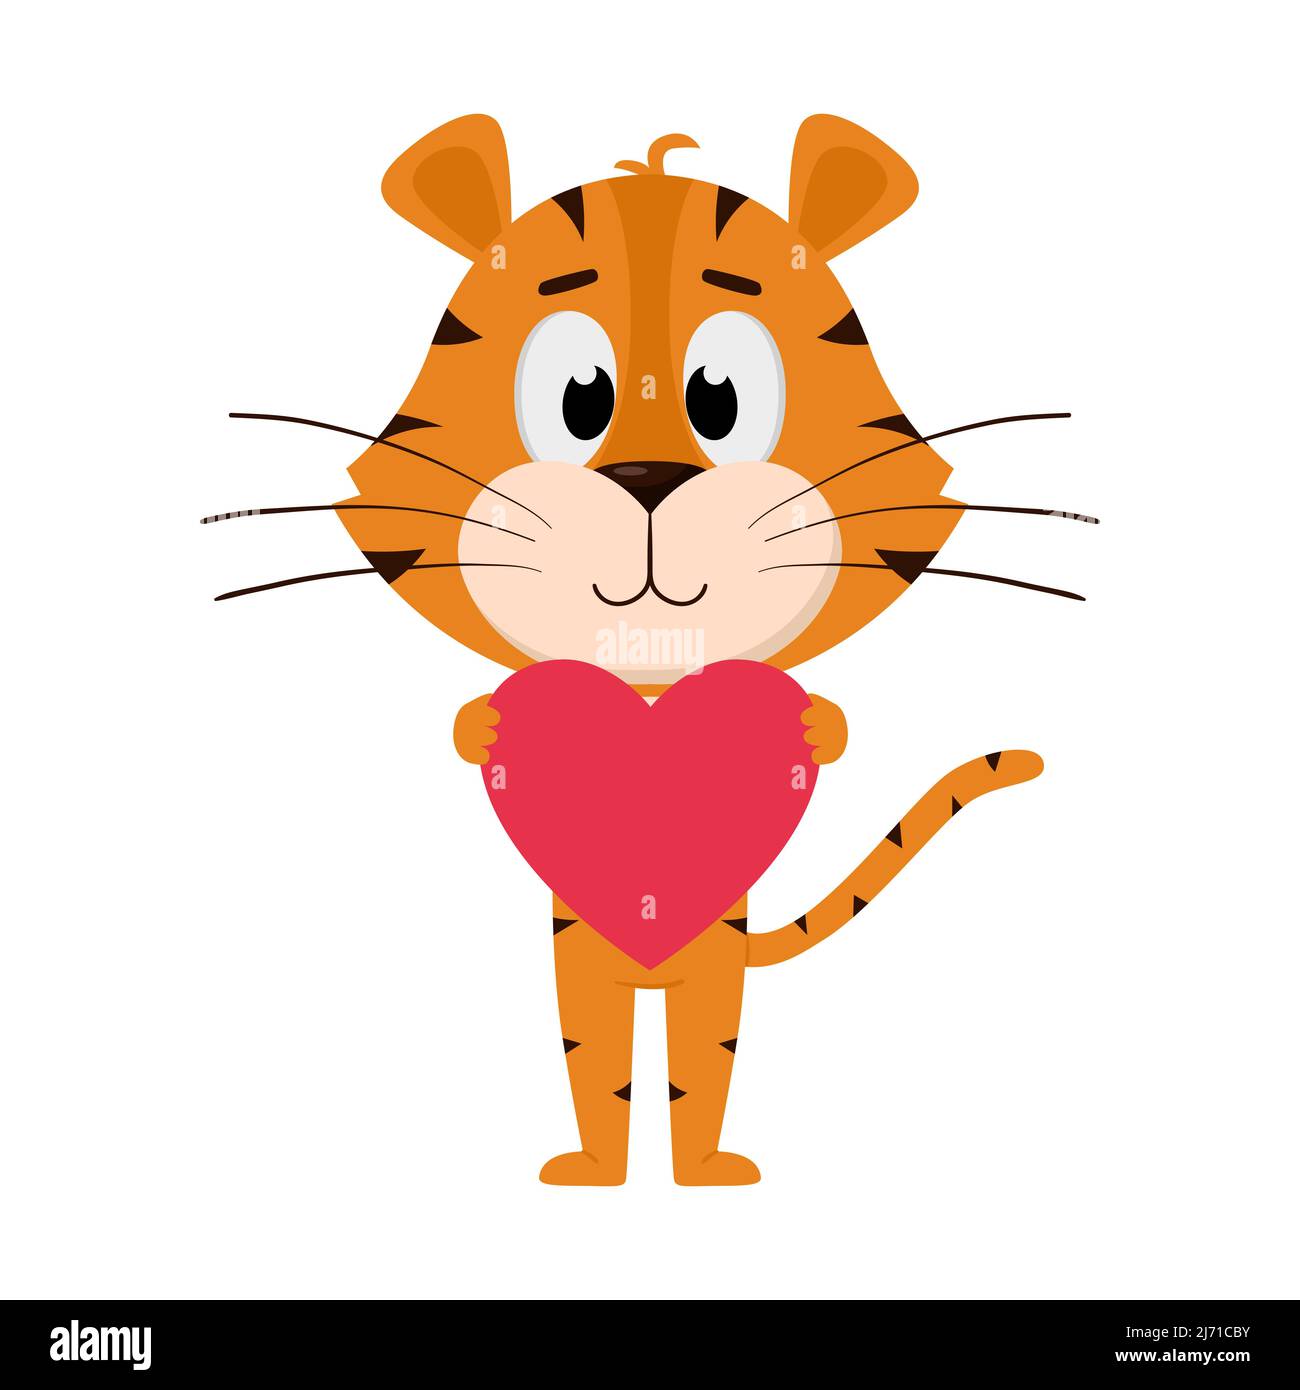 La tigre abbraccia, tiene il cuore nelle sue zampe. Carino personaggio cartoon. La tigre è il simbolo dell'anno 2022. Illustrazione vettoriale per bambini. IO Illustrazione Vettoriale